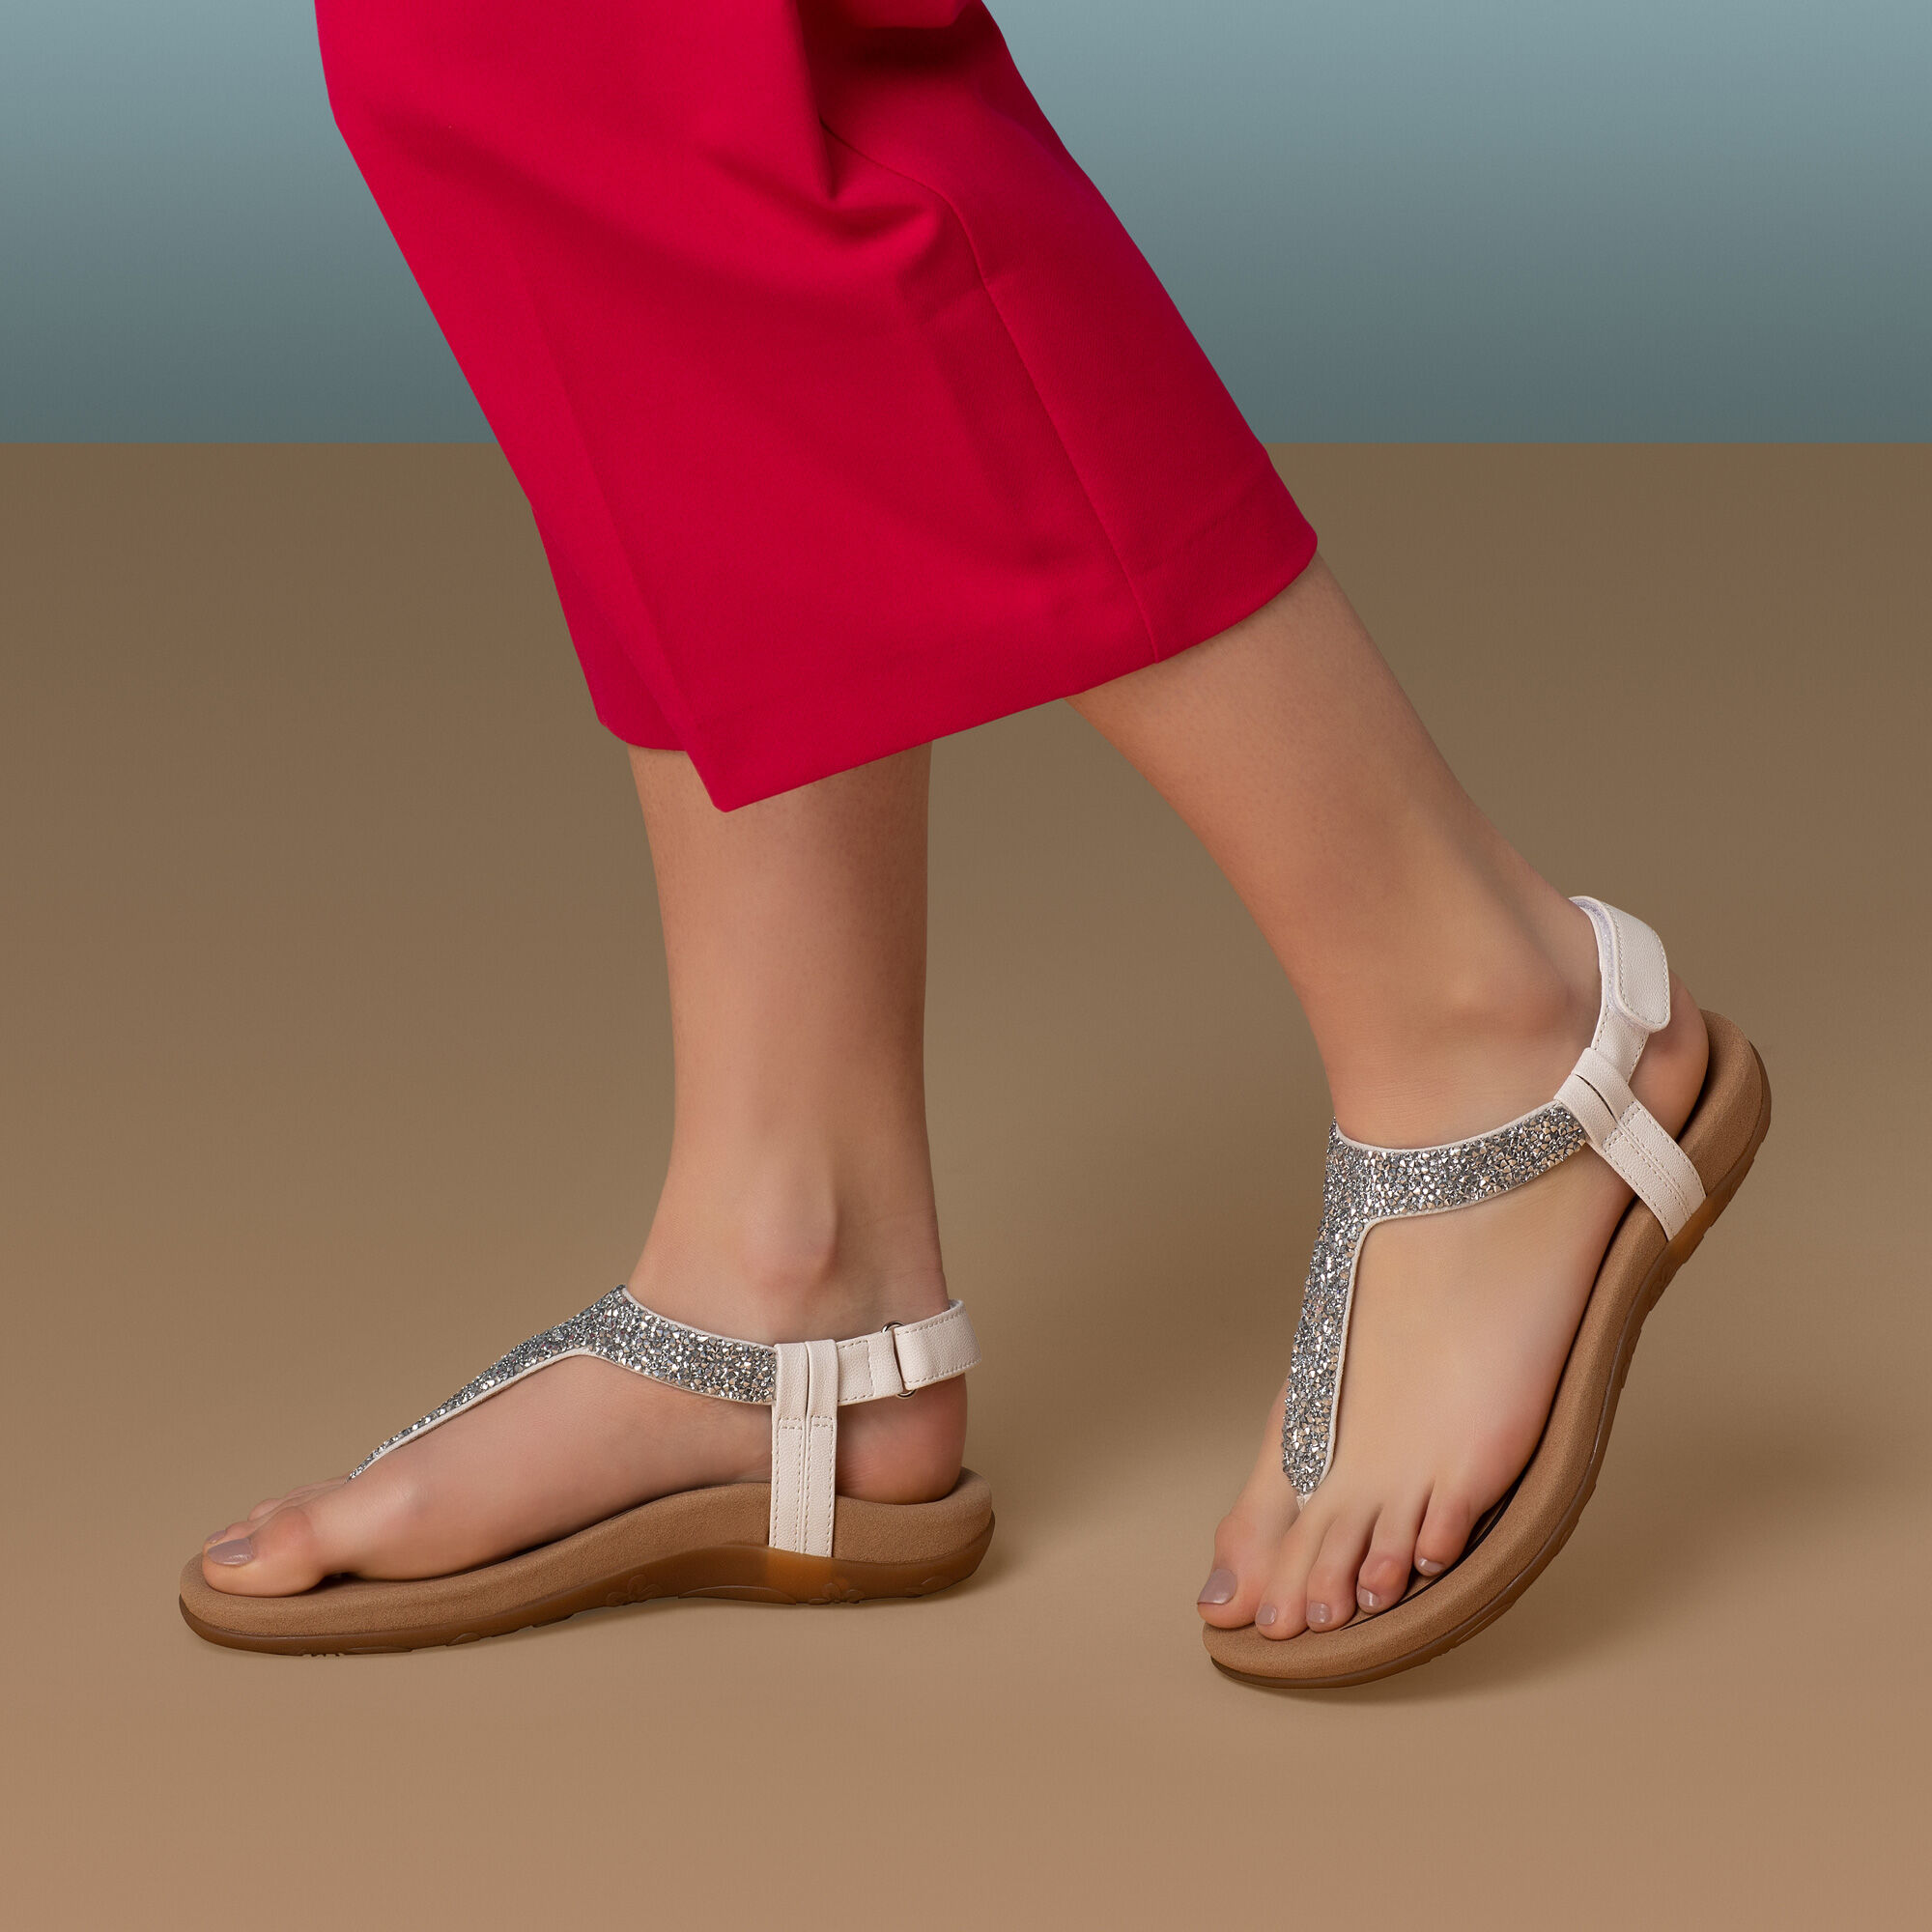 aetrex thong sandals